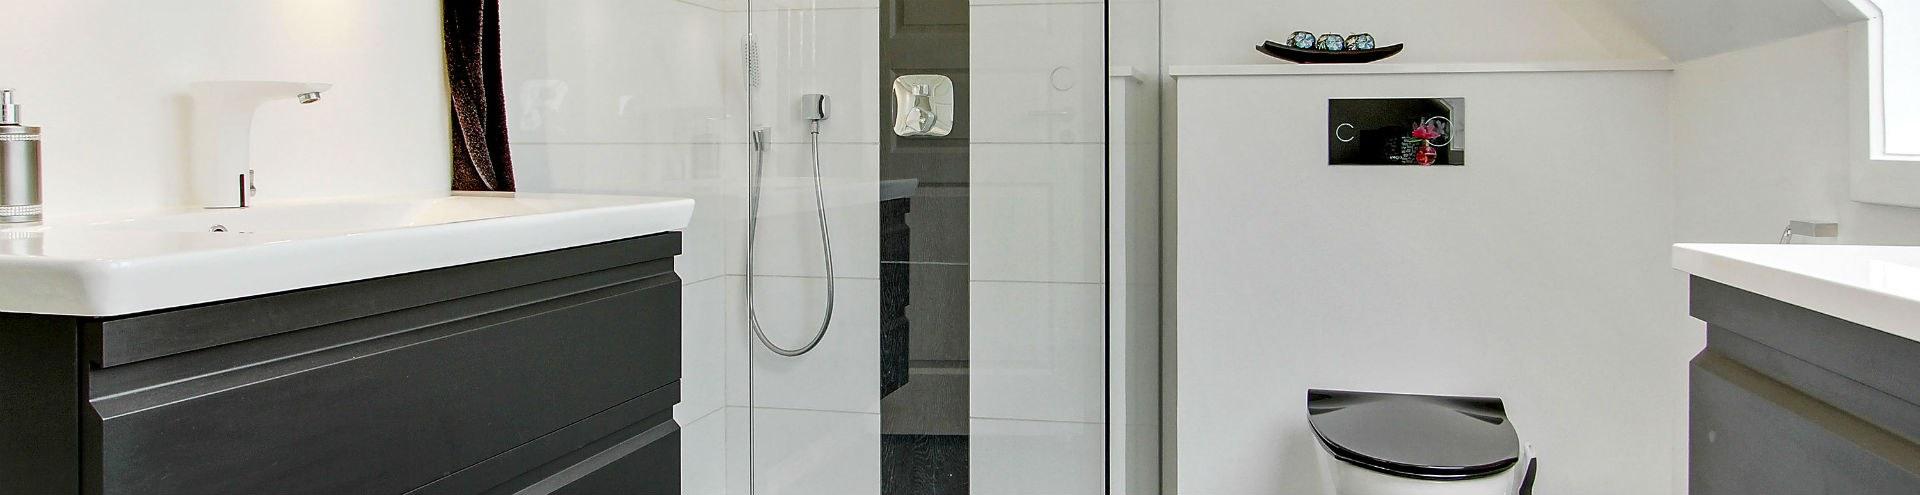 Råd om rengøring af badeværelse | Håndværker.dk